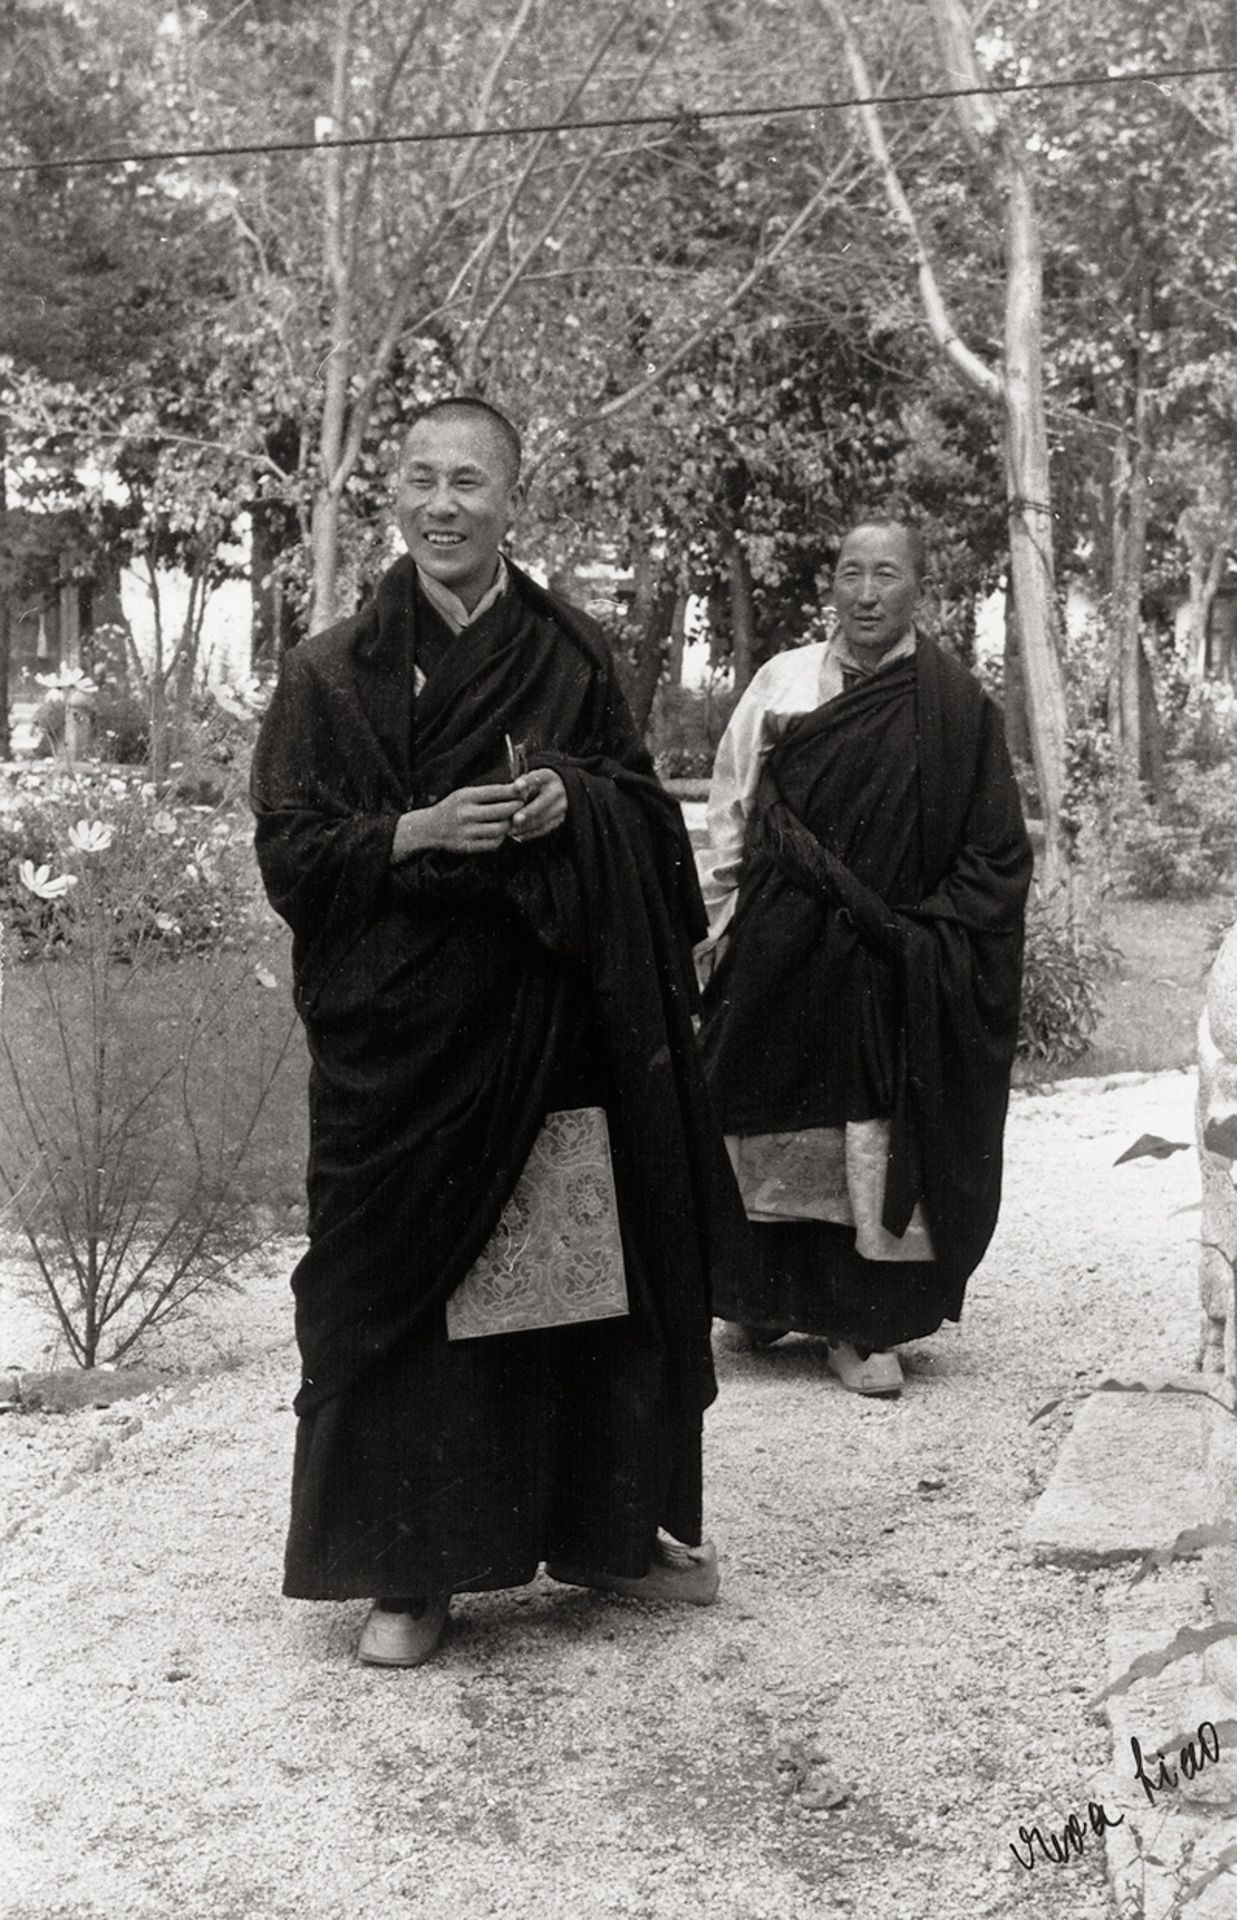 Siao, Eva: The 14th Dalai Lama (Tenzin Gyatso) in Norbulingka Park,...